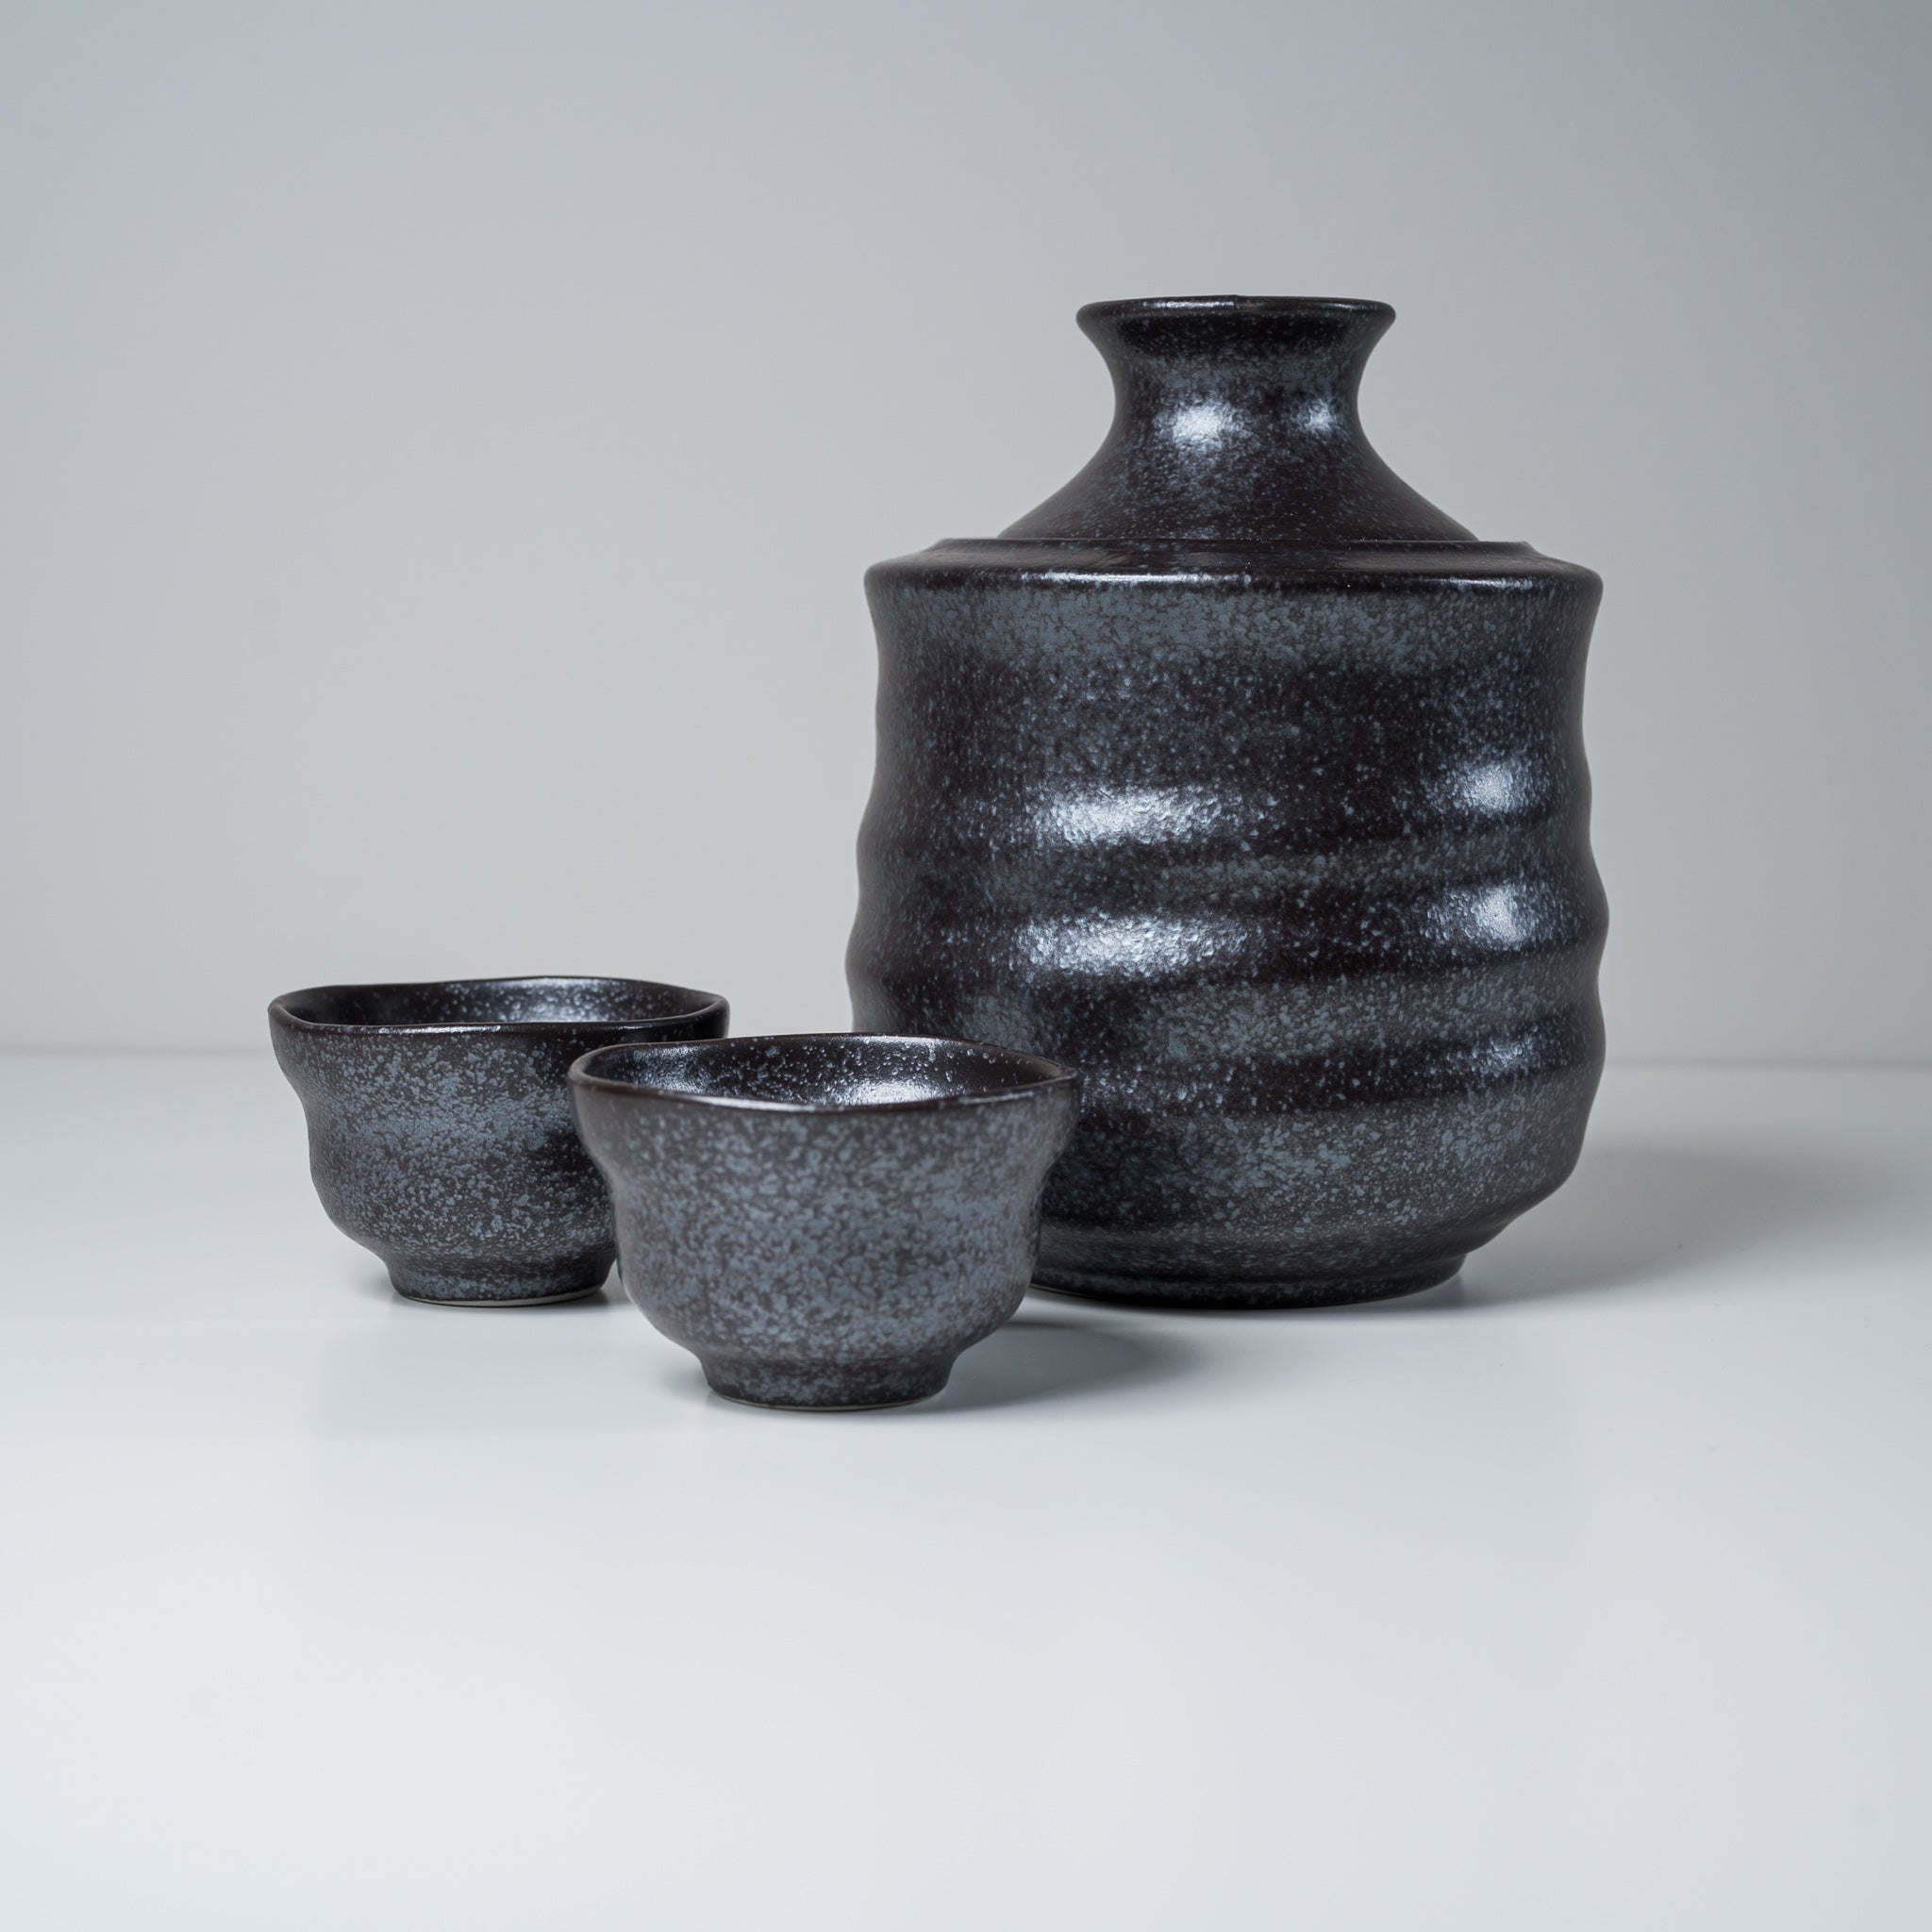 Mino ware Hot Sake Set - Charcoal Black / 熱燗用 酒器セット